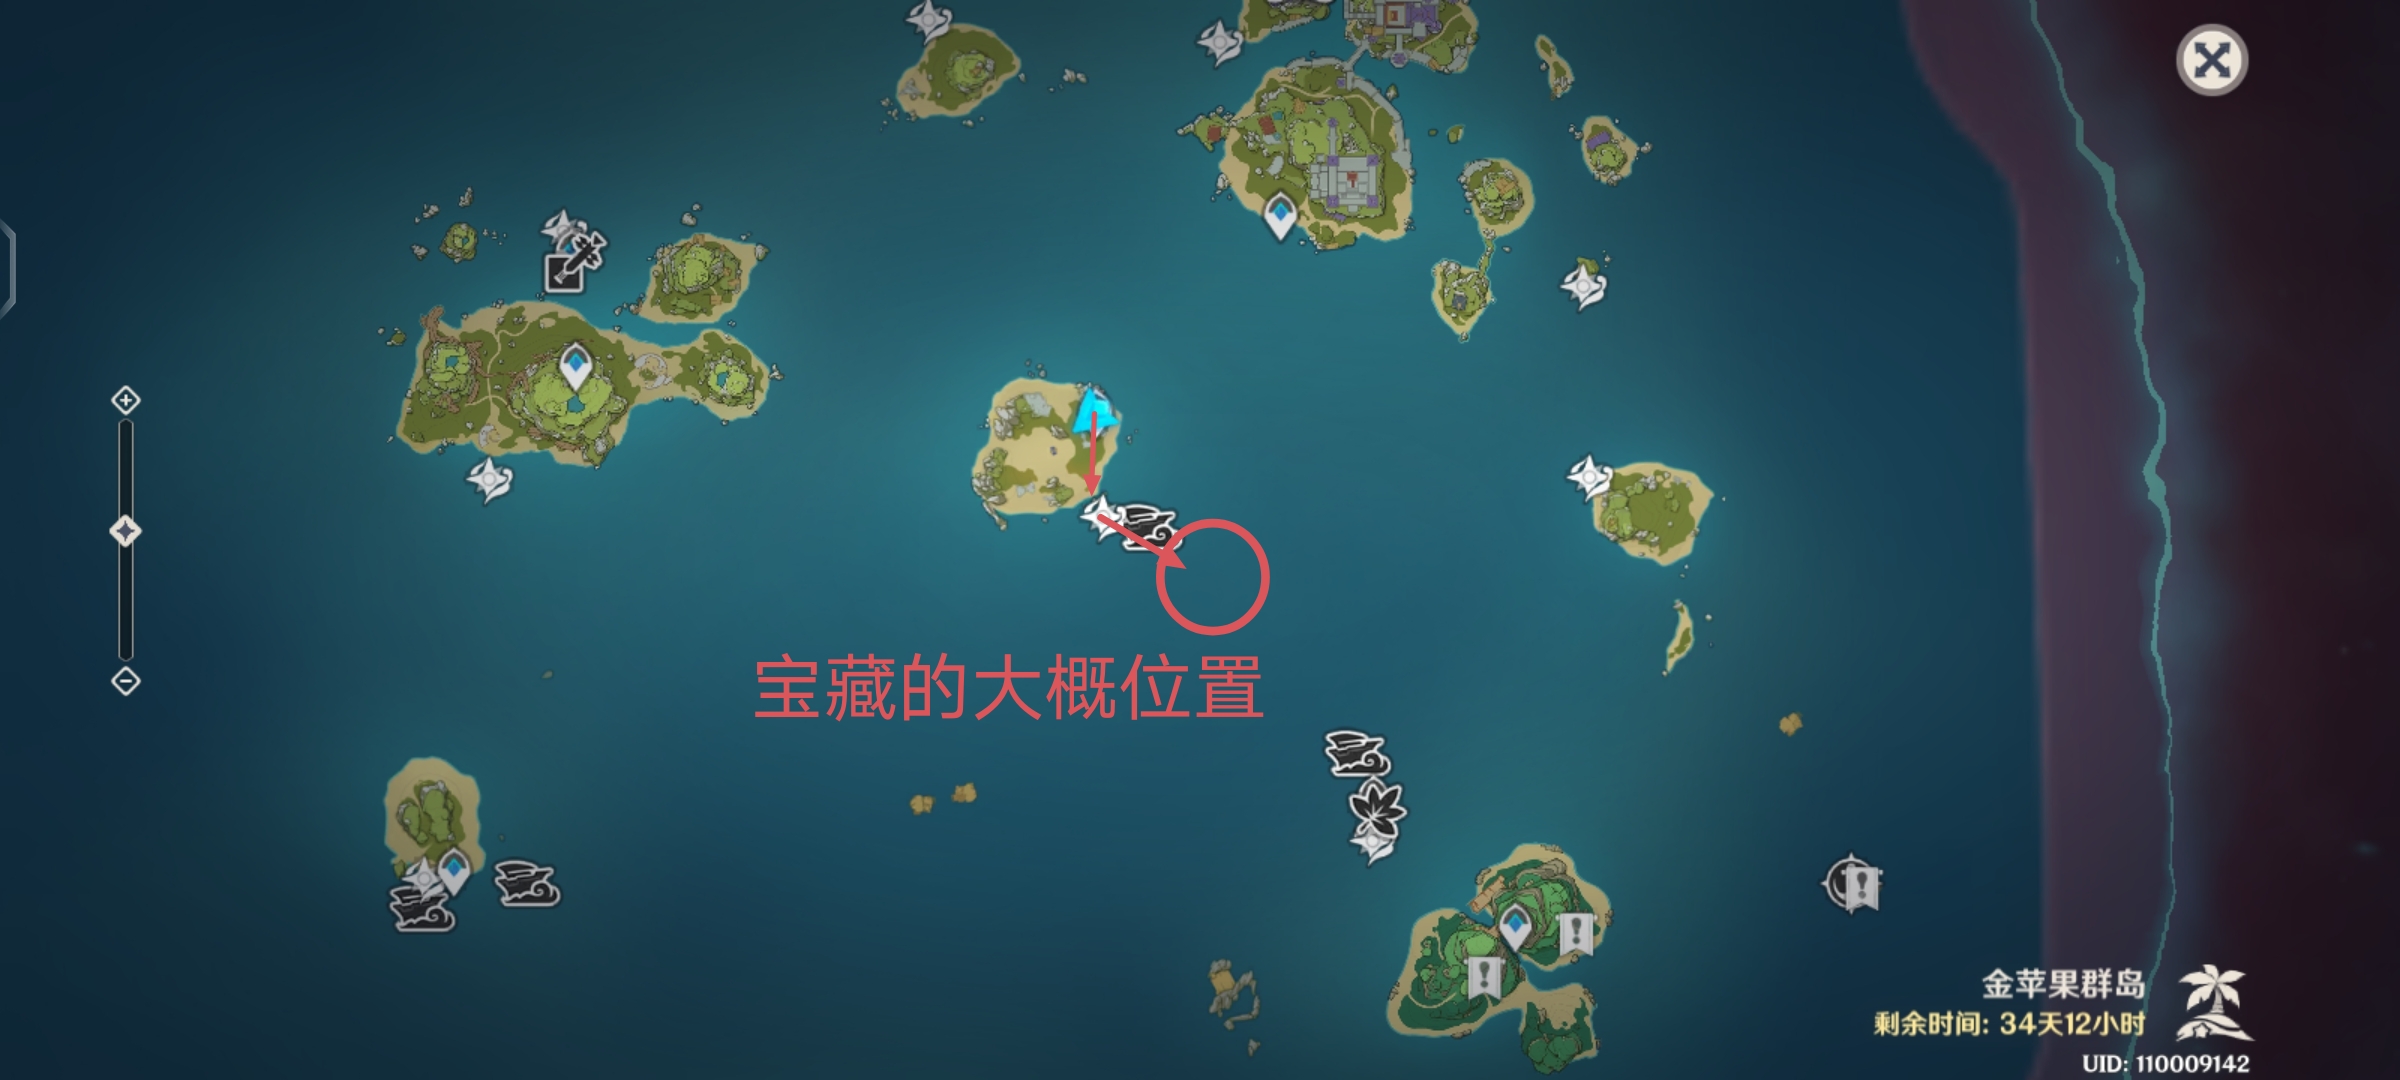 【V2.8攻略】#探索解谜#2.8版本金苹果群岛的新增世界任务——「四礁觅宝记」的流程梳理|原神 - 第79张